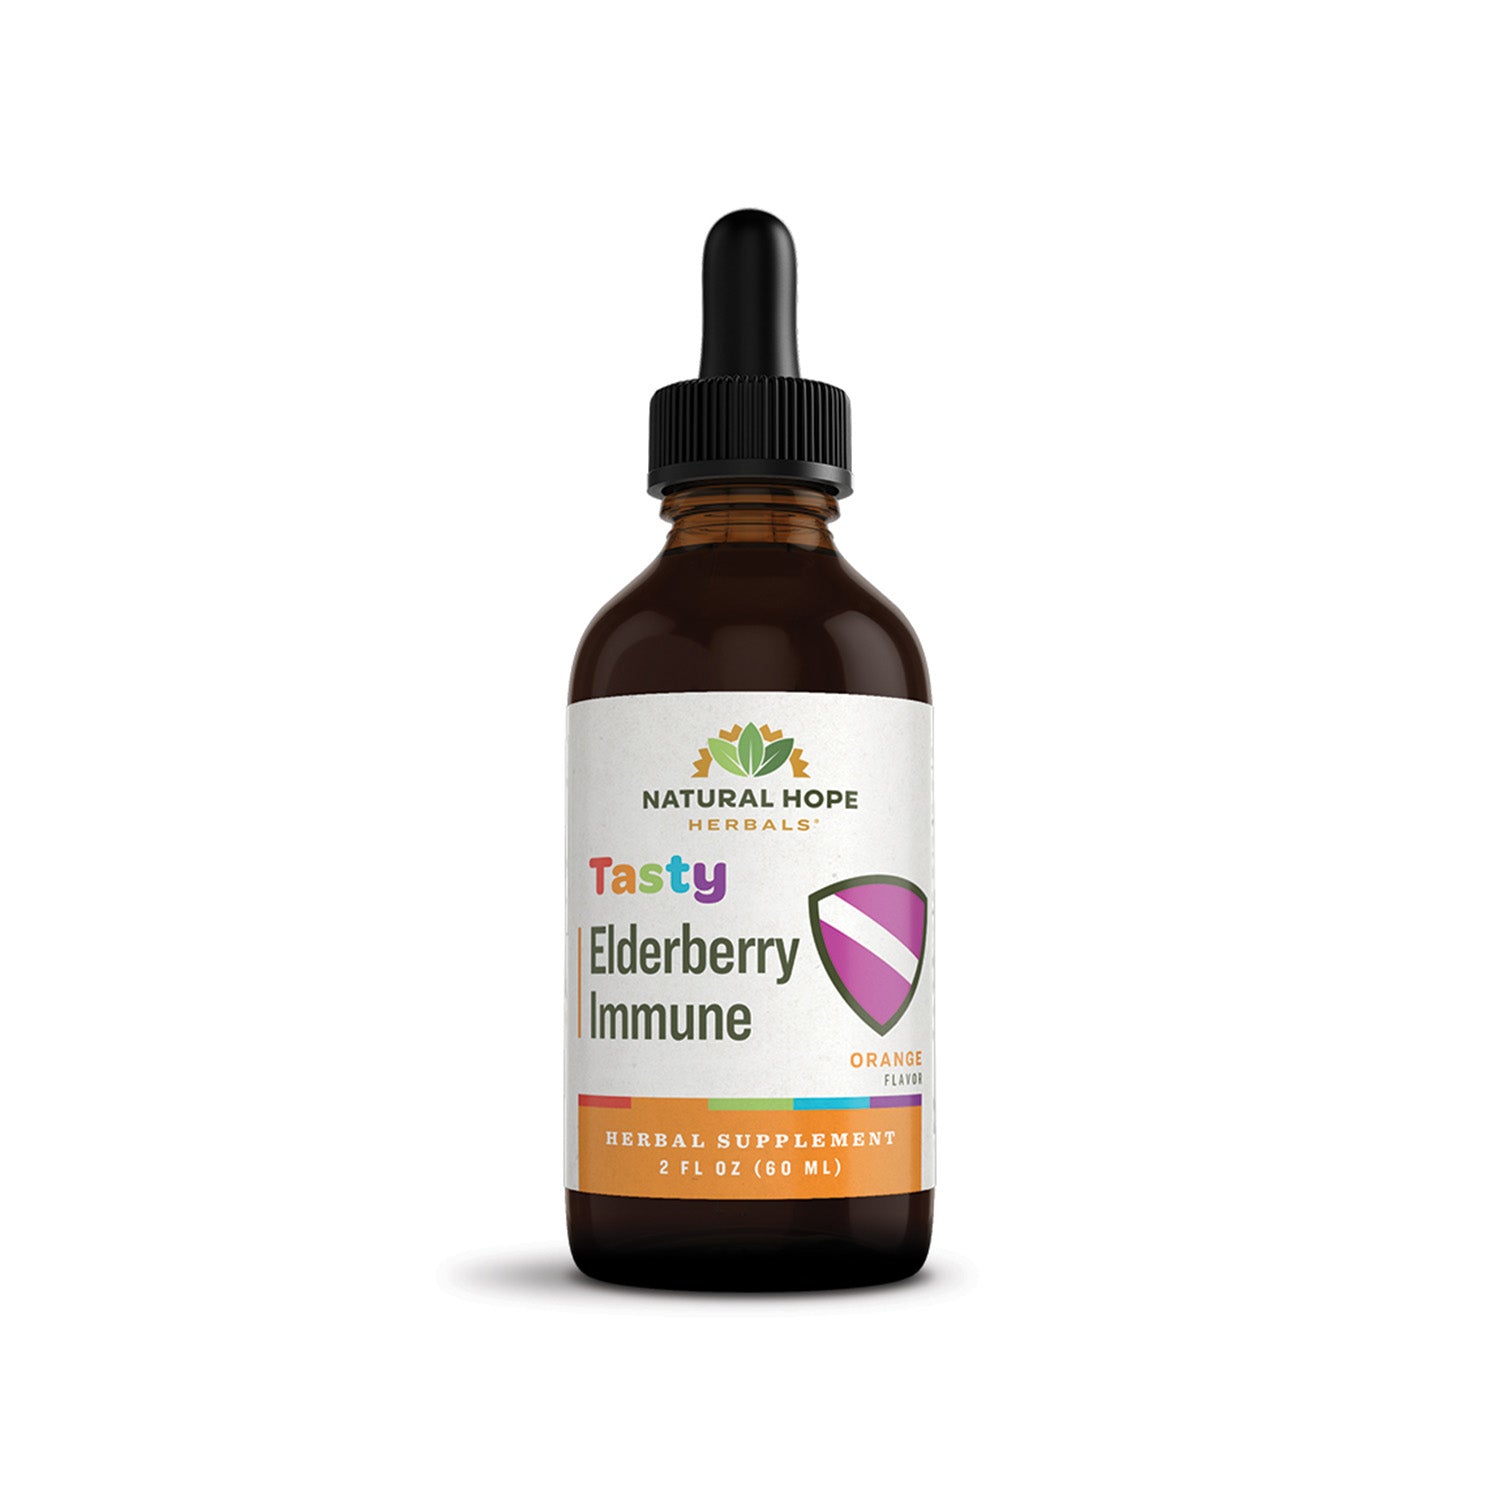 Tasty Elderberry Immune - Natural Hope Herbals